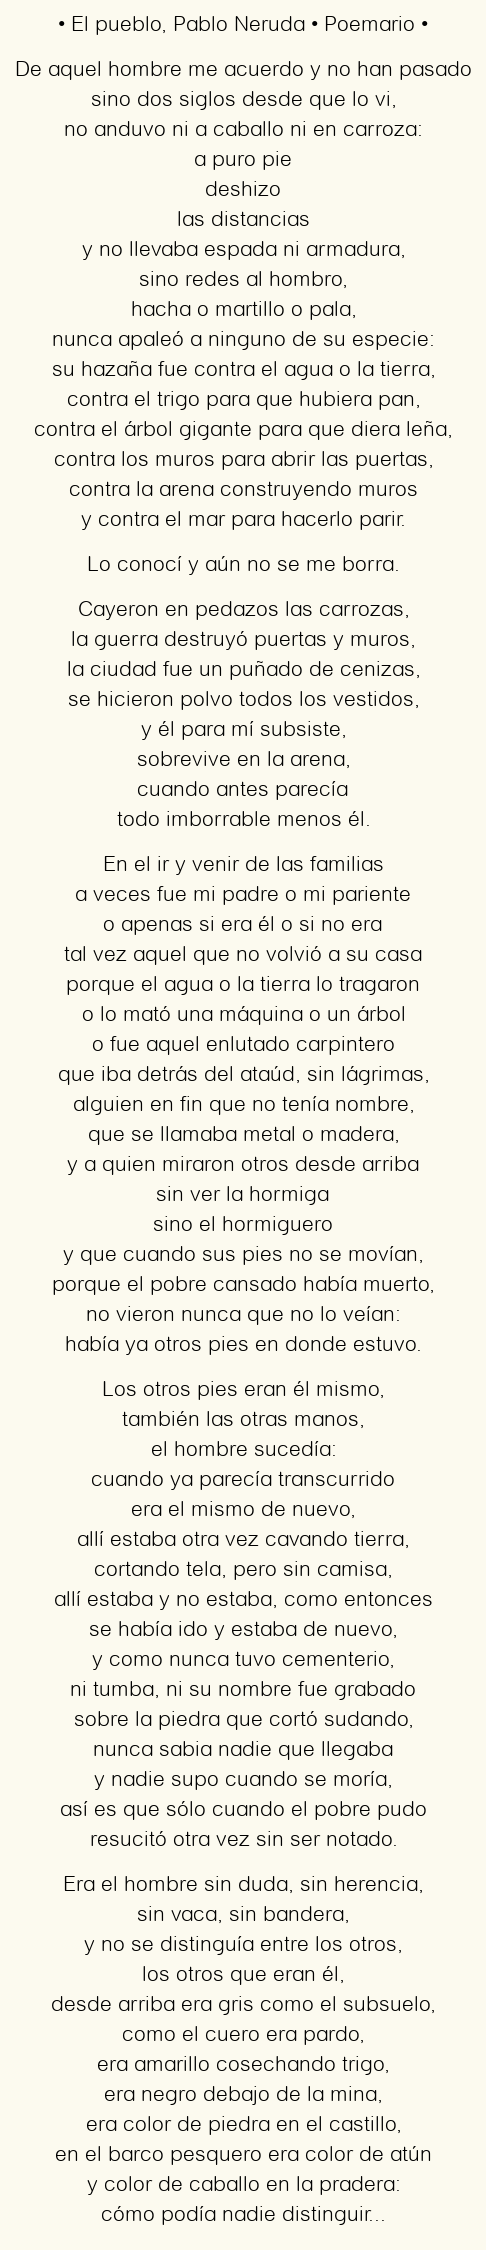 Imagen con el poema El pueblo, por Pablo Neruda